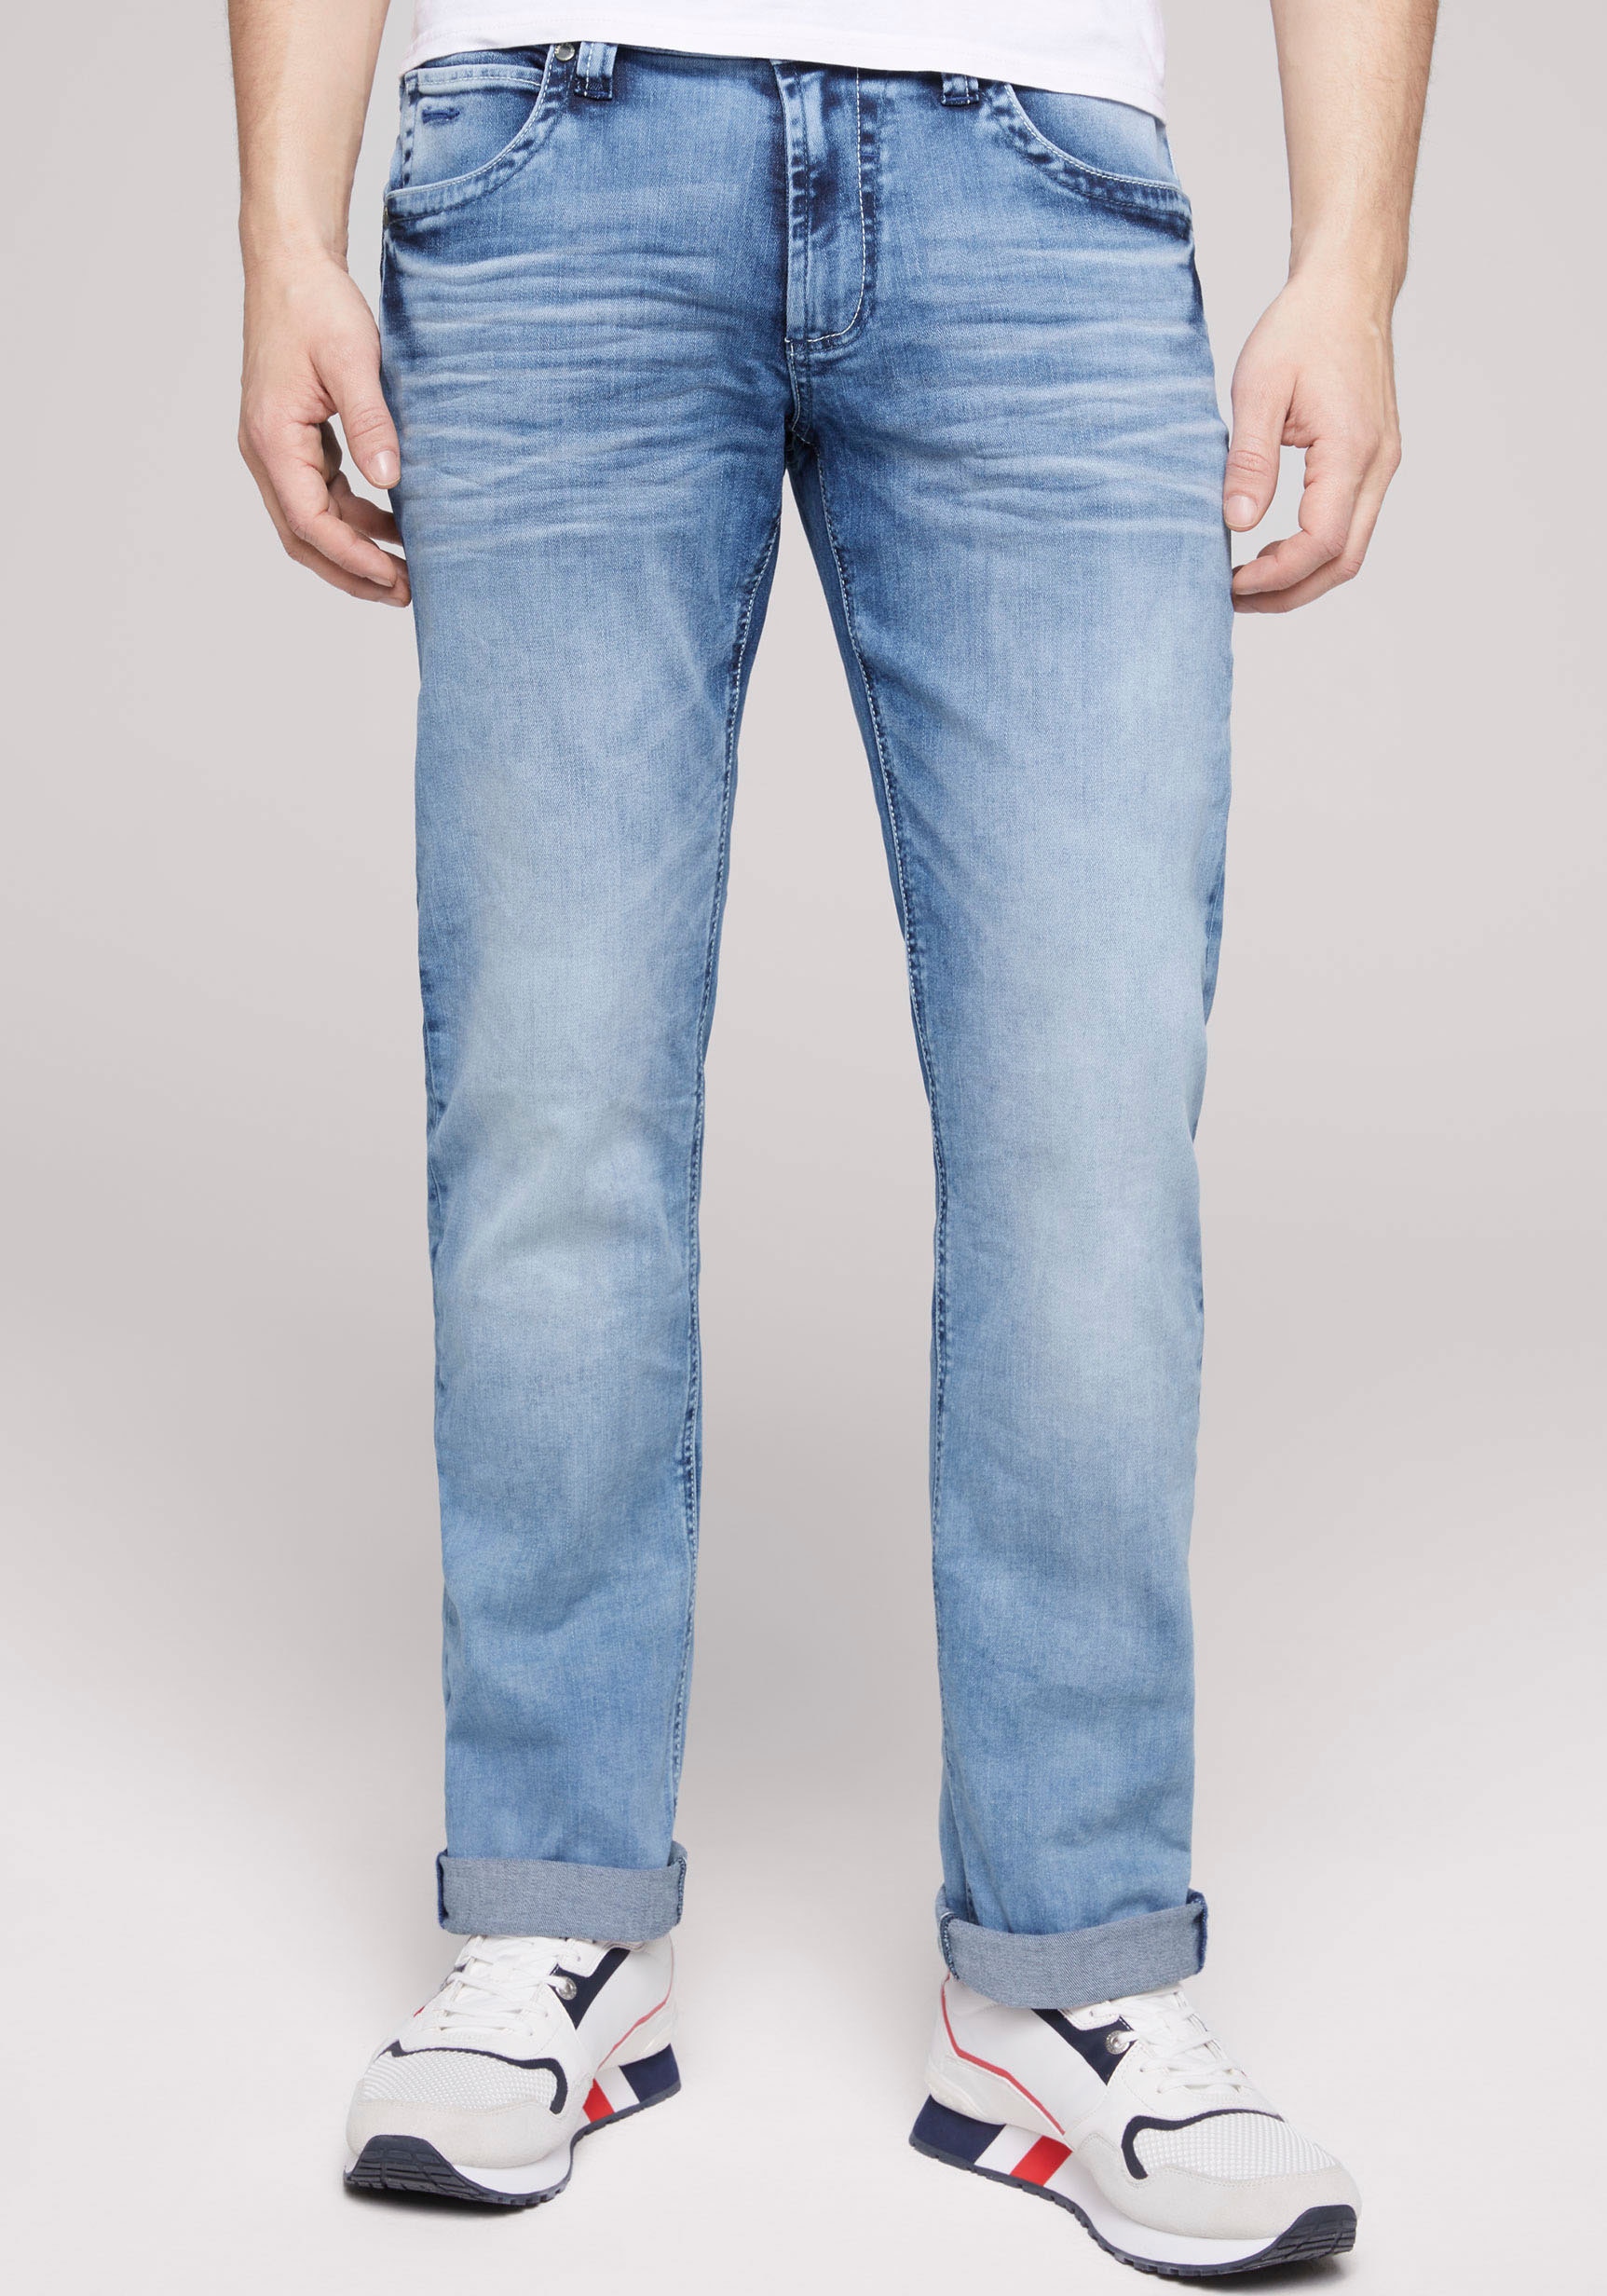 kaufen CAMP mit online Straight-Jeans bei »NI:CO:R611«, OTTO markanten DAVID Steppnähten